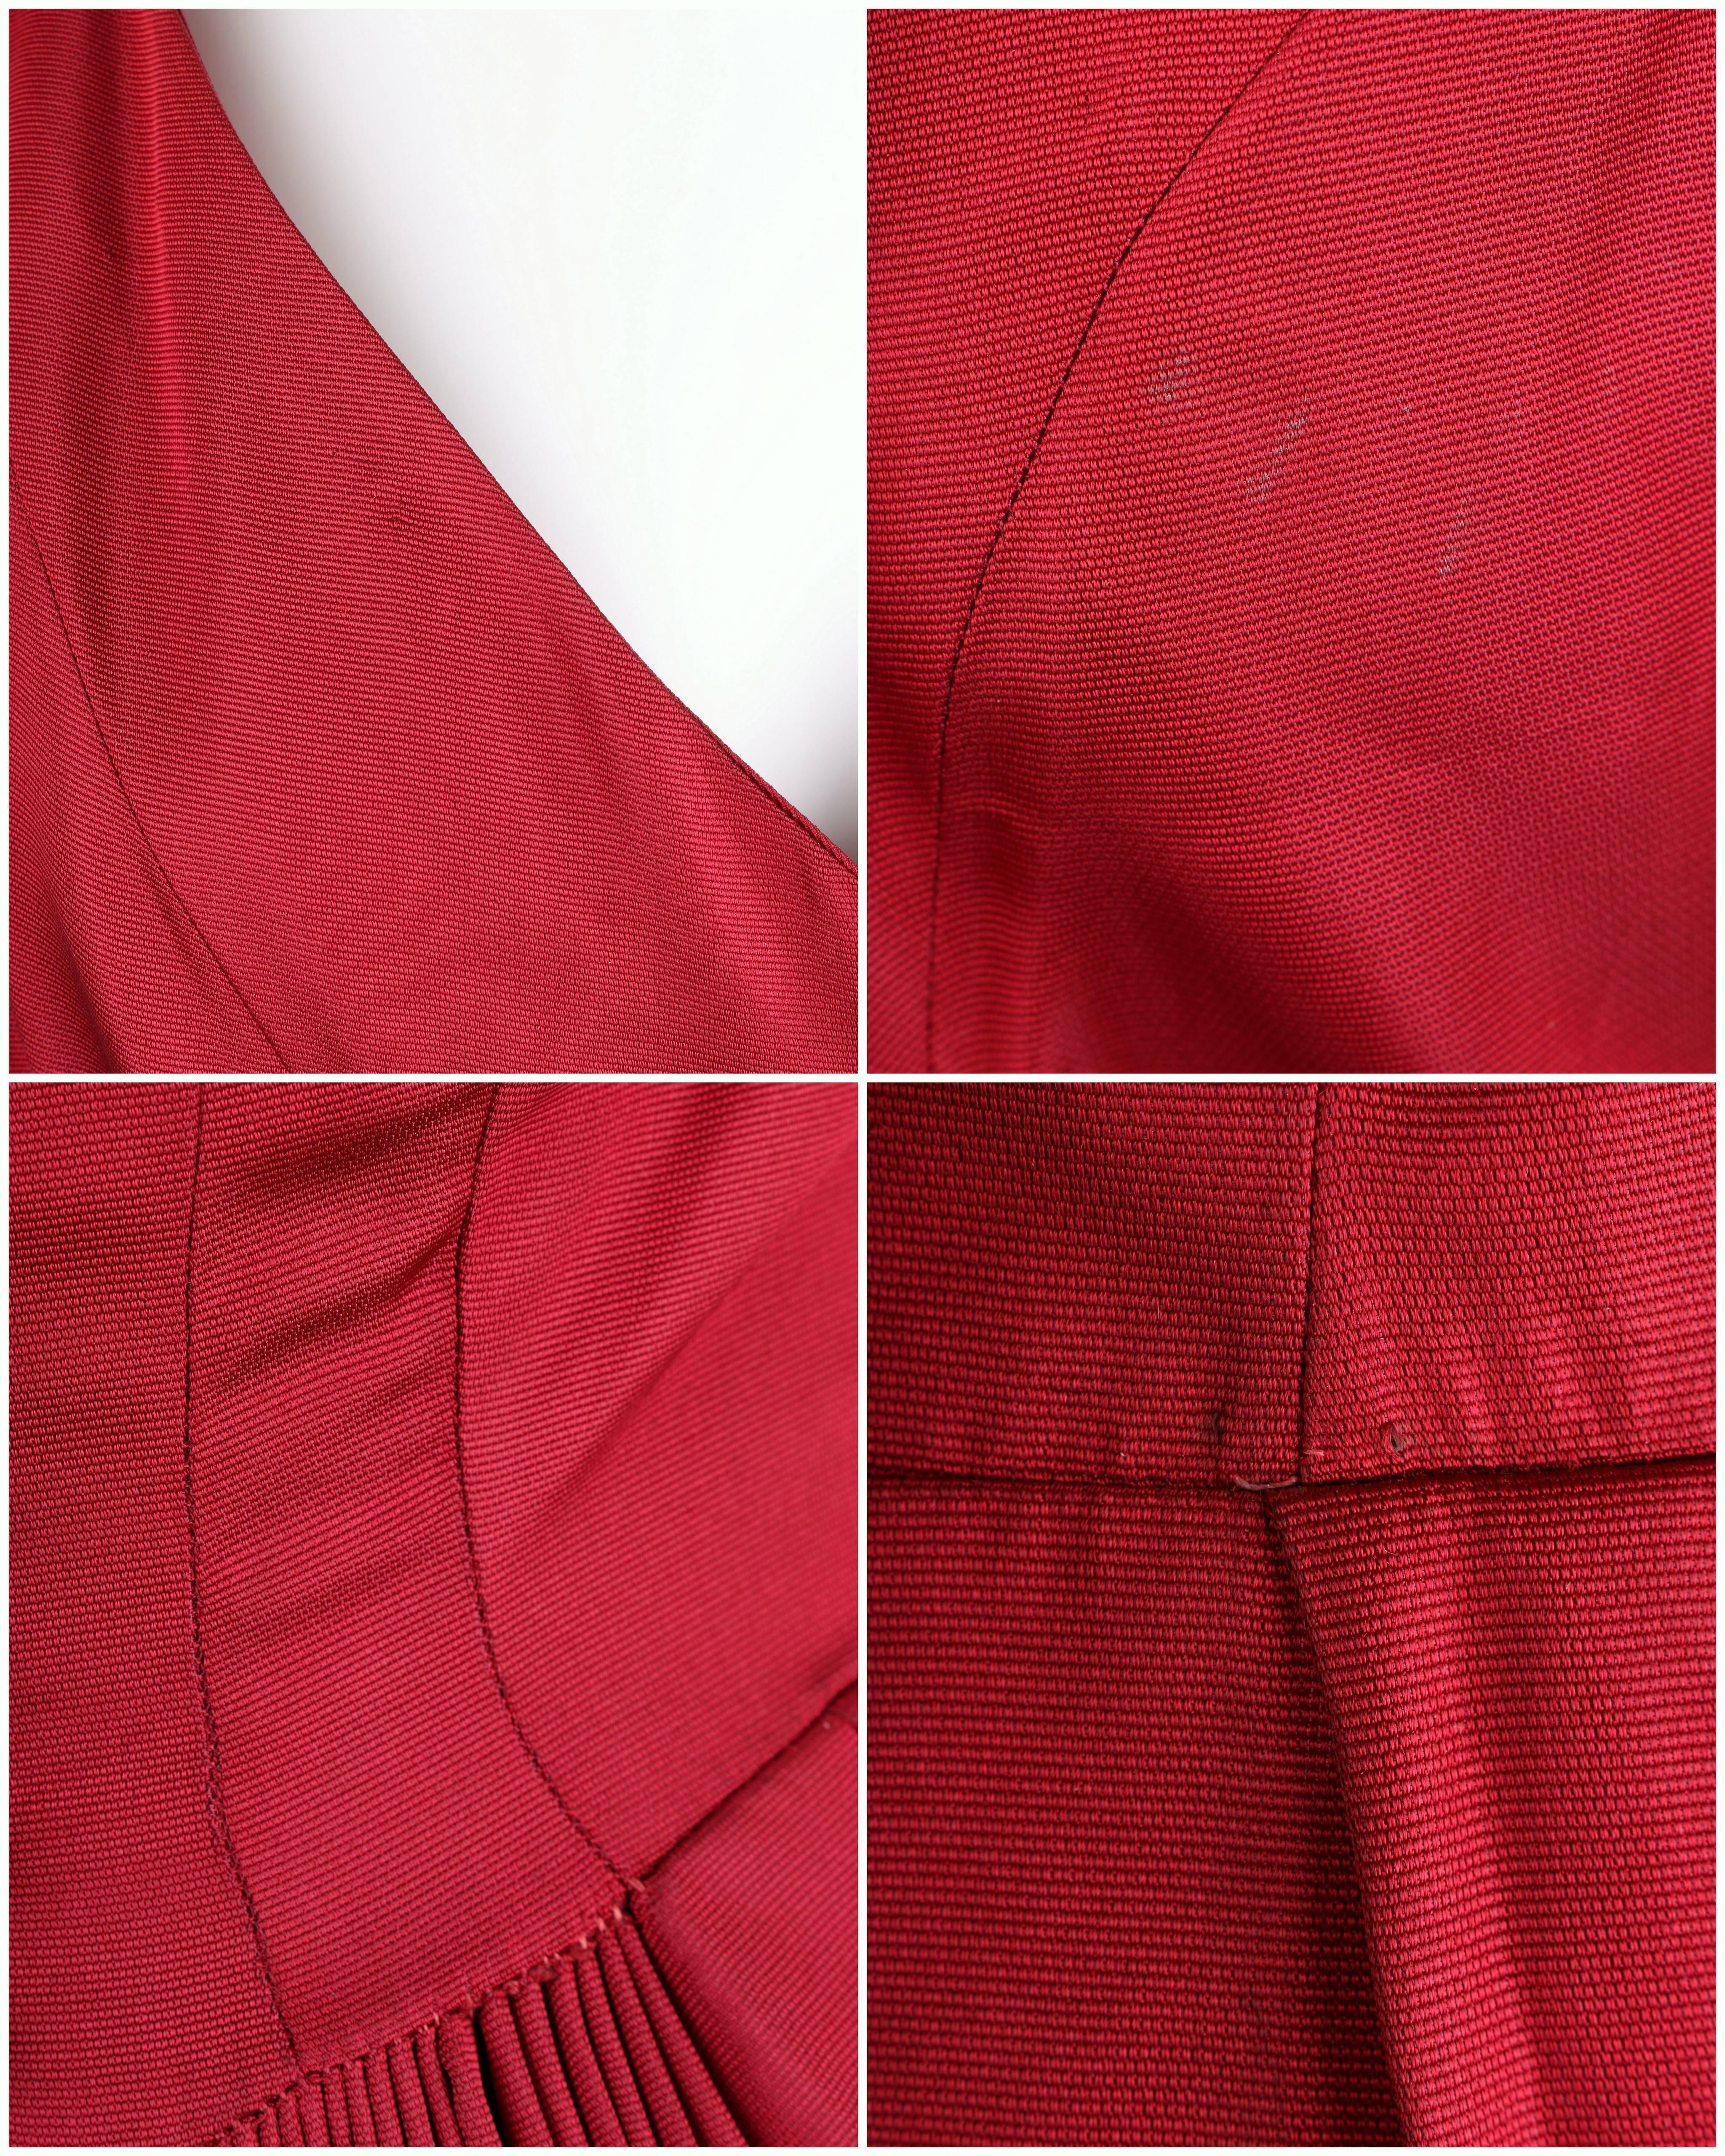 Vtg c.1949 NETTIE ROSENSTEIN Burgundy Red Evening Dress NOS Museum Piece Size S 6